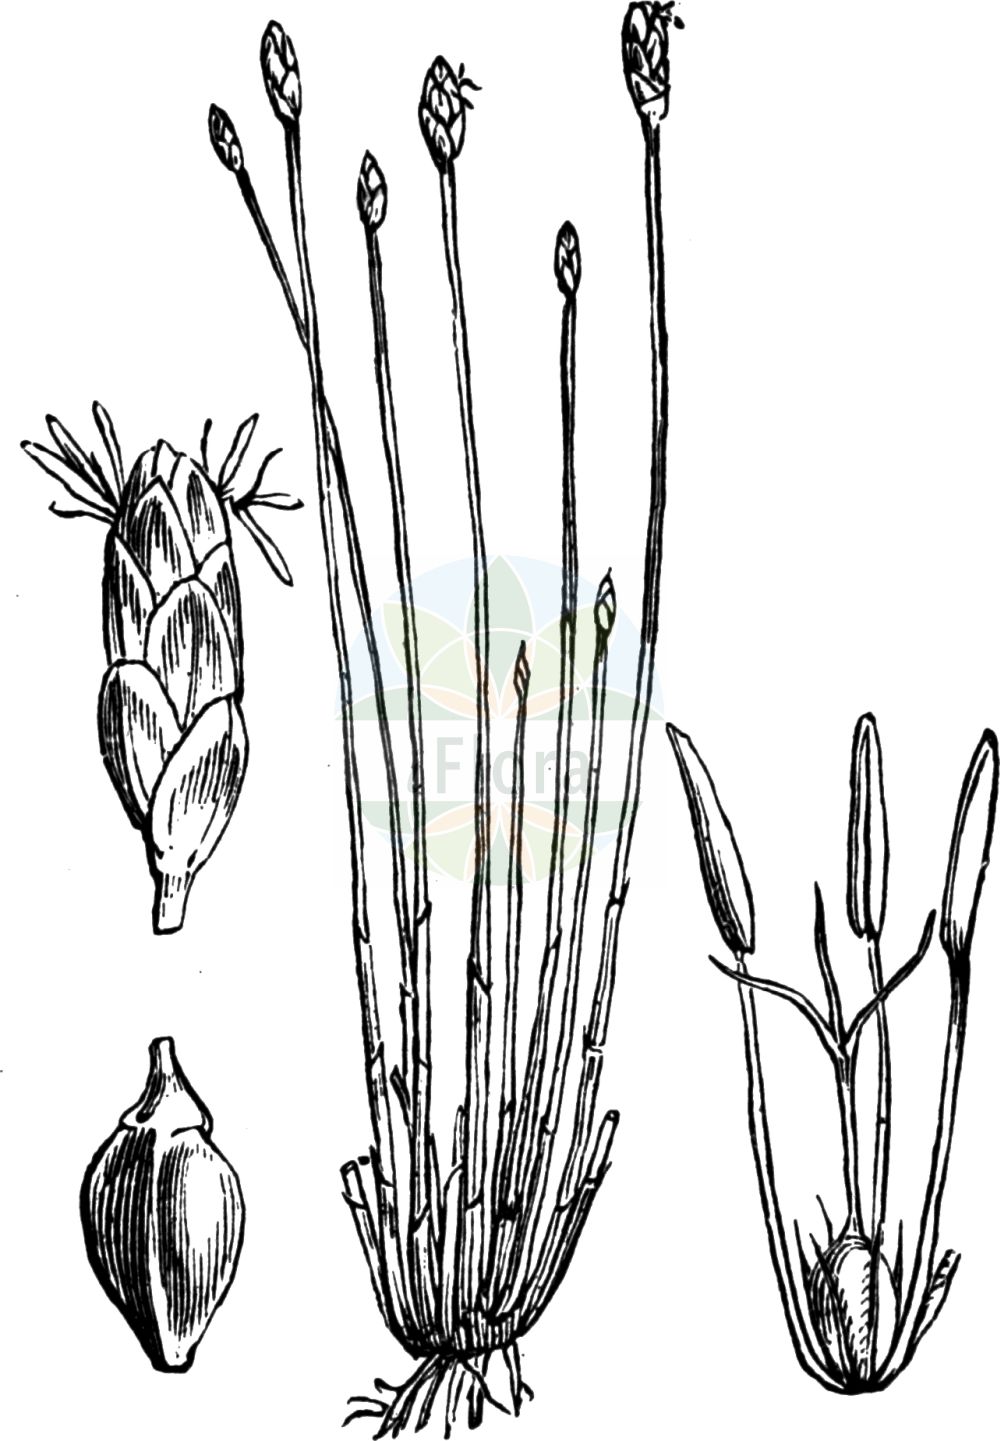 Historische Abbildung von Eleocharis multicaulis (Vielstängelige Sumpfbinse - Many-stalked Spike-Rush). Das Bild zeigt Blatt, Bluete, Frucht und Same. ---- Historical Drawing of Eleocharis multicaulis (Vielstängelige Sumpfbinse - Many-stalked Spike-Rush). The image is showing leaf, flower, fruit and seed.(Eleocharis multicaulis,Vielstängelige Sumpfbinse,Many-stalked Spike-Rush,Eleocharis multicaulis,Scirpus multicaulis,Vielstaengelige Sumpfbinse,Vielstengelige Sumpfbinse,Many-stalked Spike-Rush,Many-stemmed Spikerush,Eleocharis,Sumpfbinse,Spikerush,Cyperaceae,Sauergräser,Sedge family,Blatt,Bluete,Frucht,Same,leaf,flower,fruit,seed,Fitch et al. (1880))